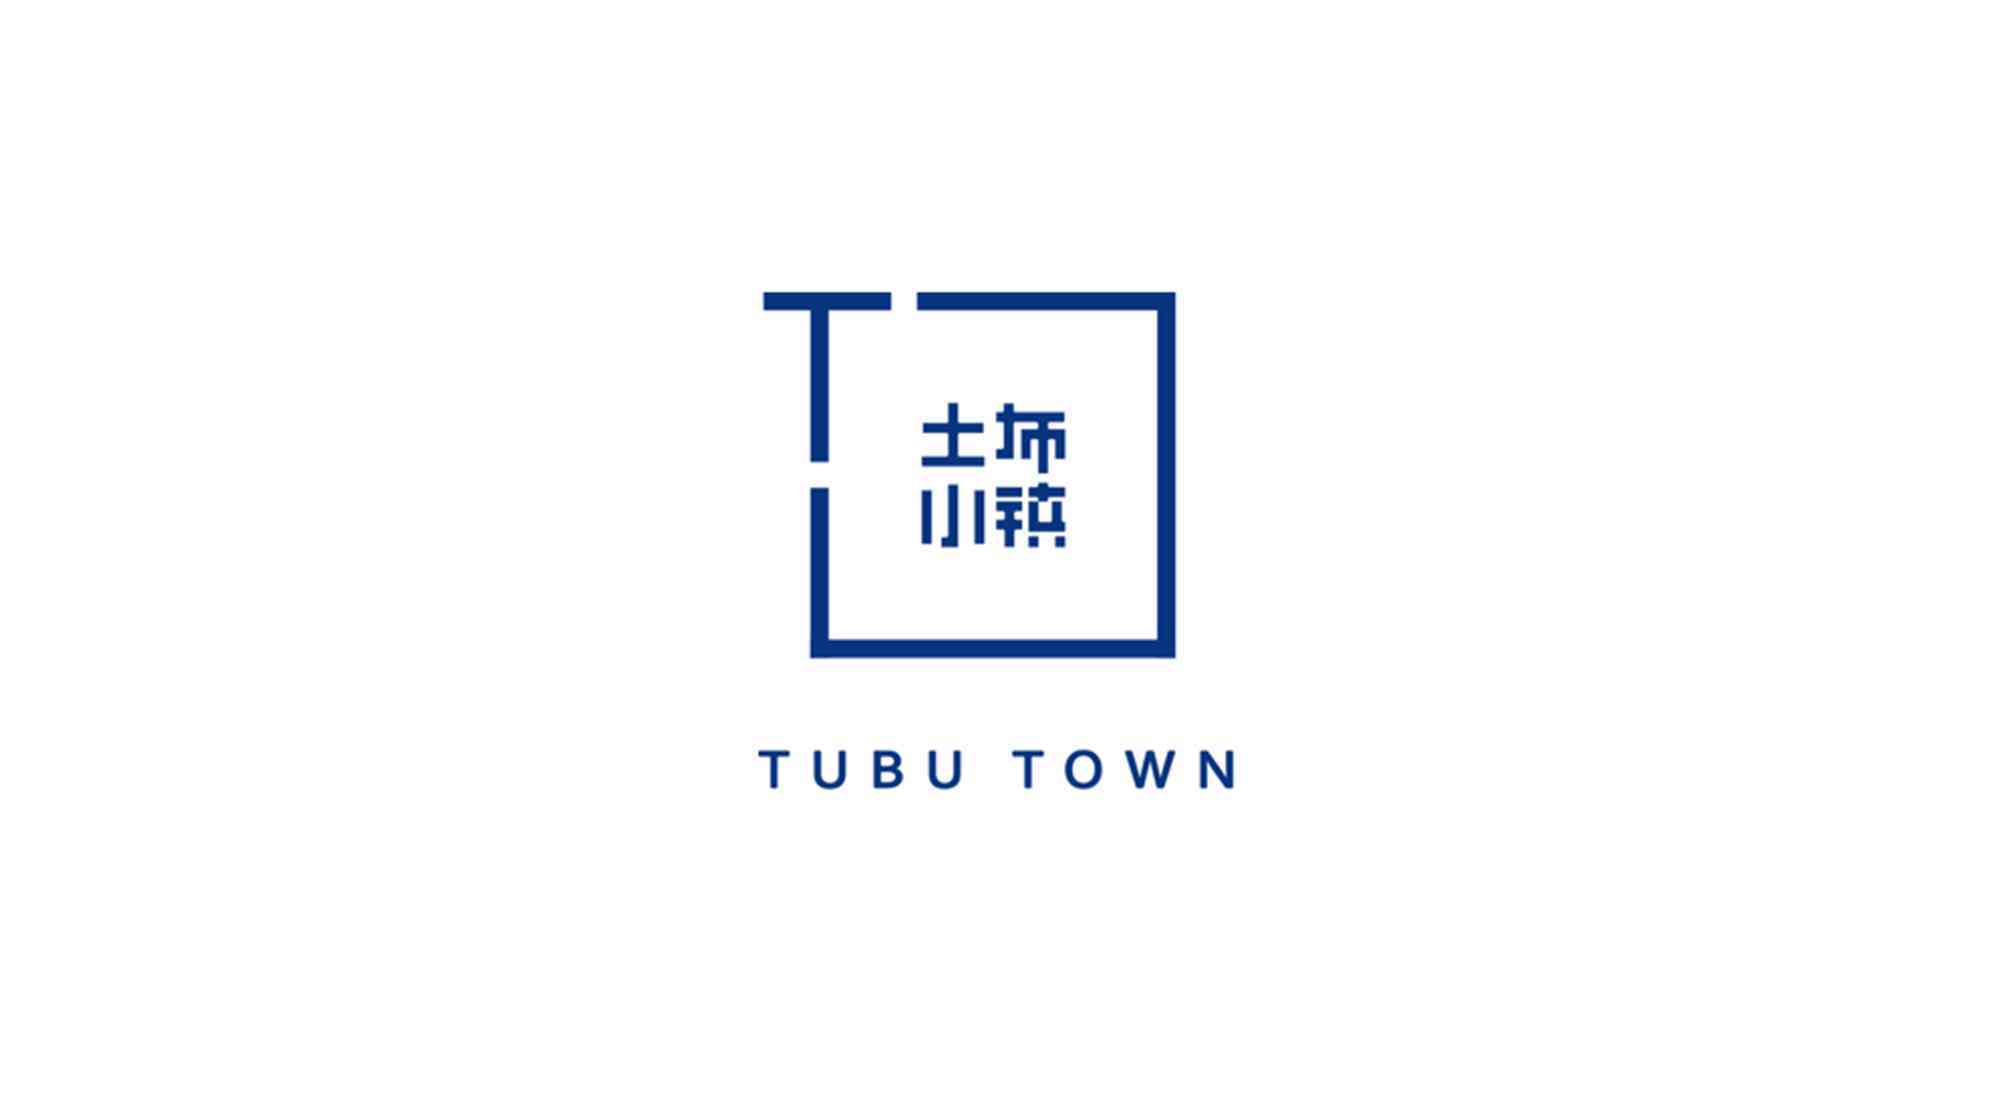 贞丰县土布小镇旅游景点logo设计图片素材